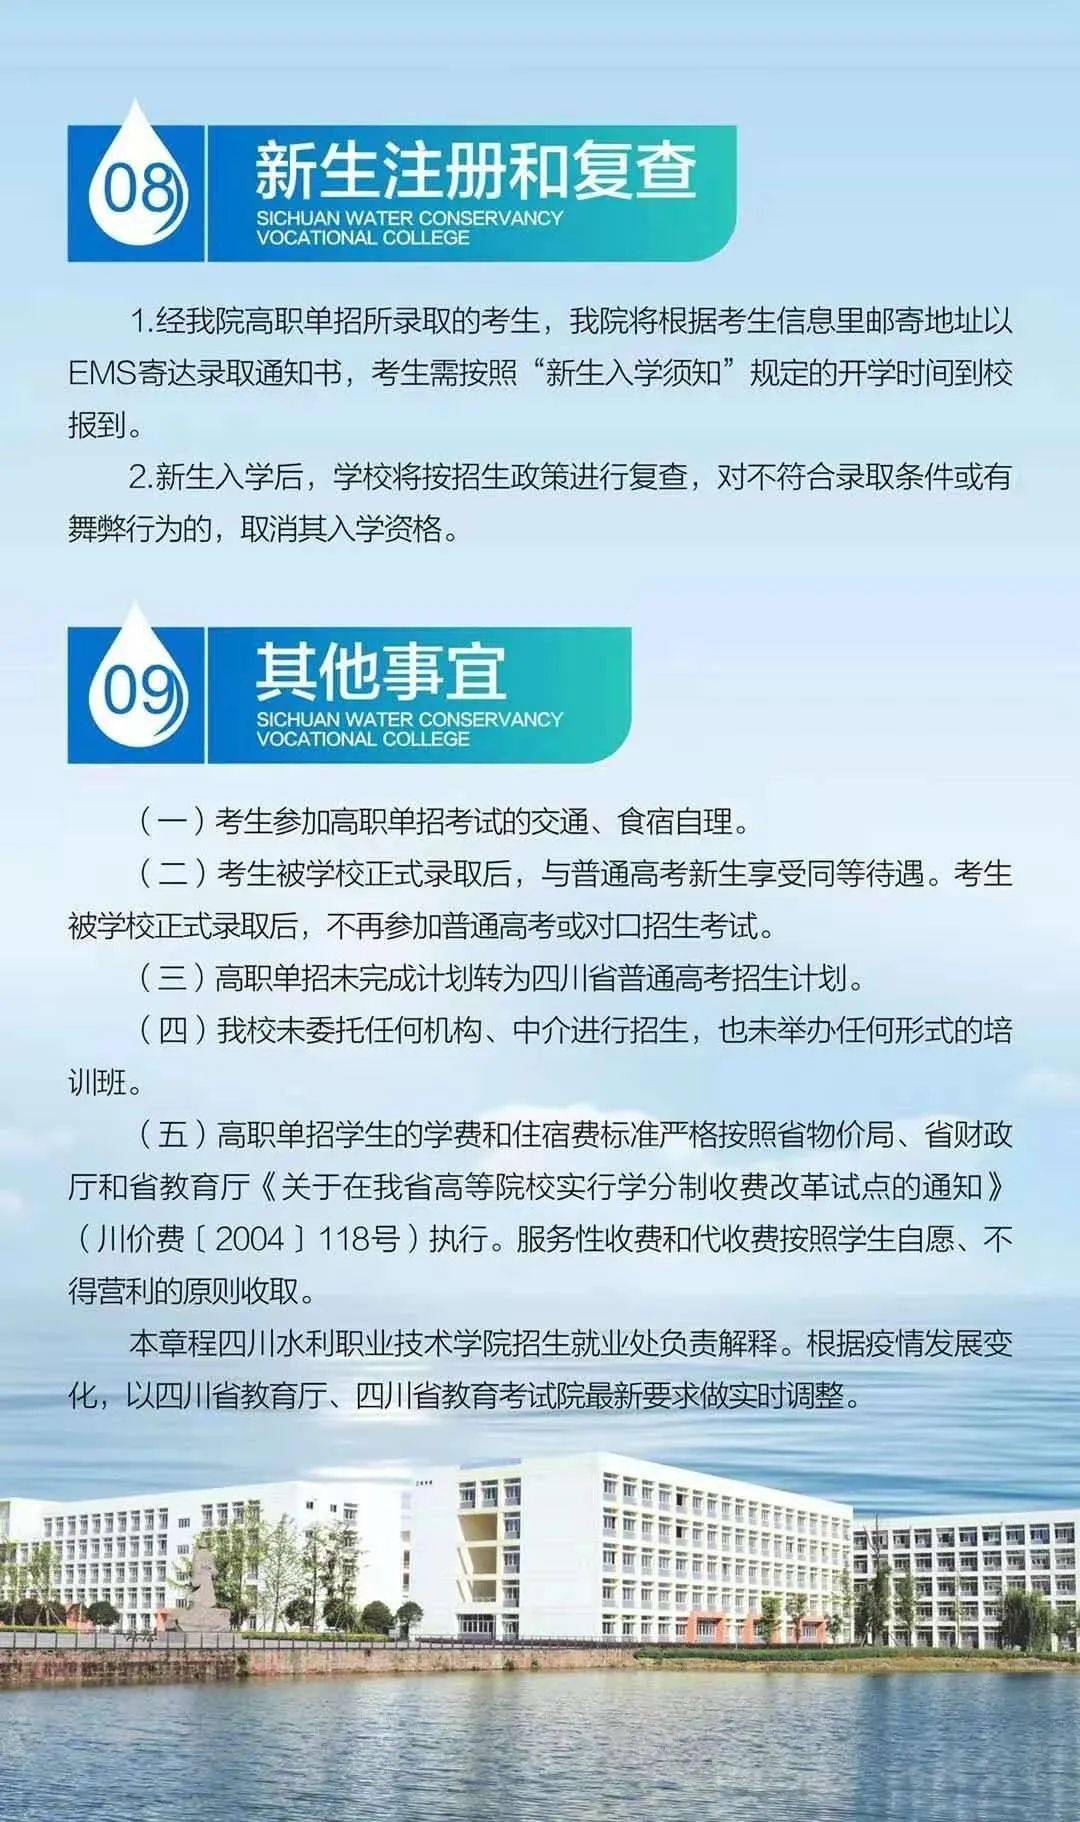 重庆水利电力职业技术学院-睿亚训